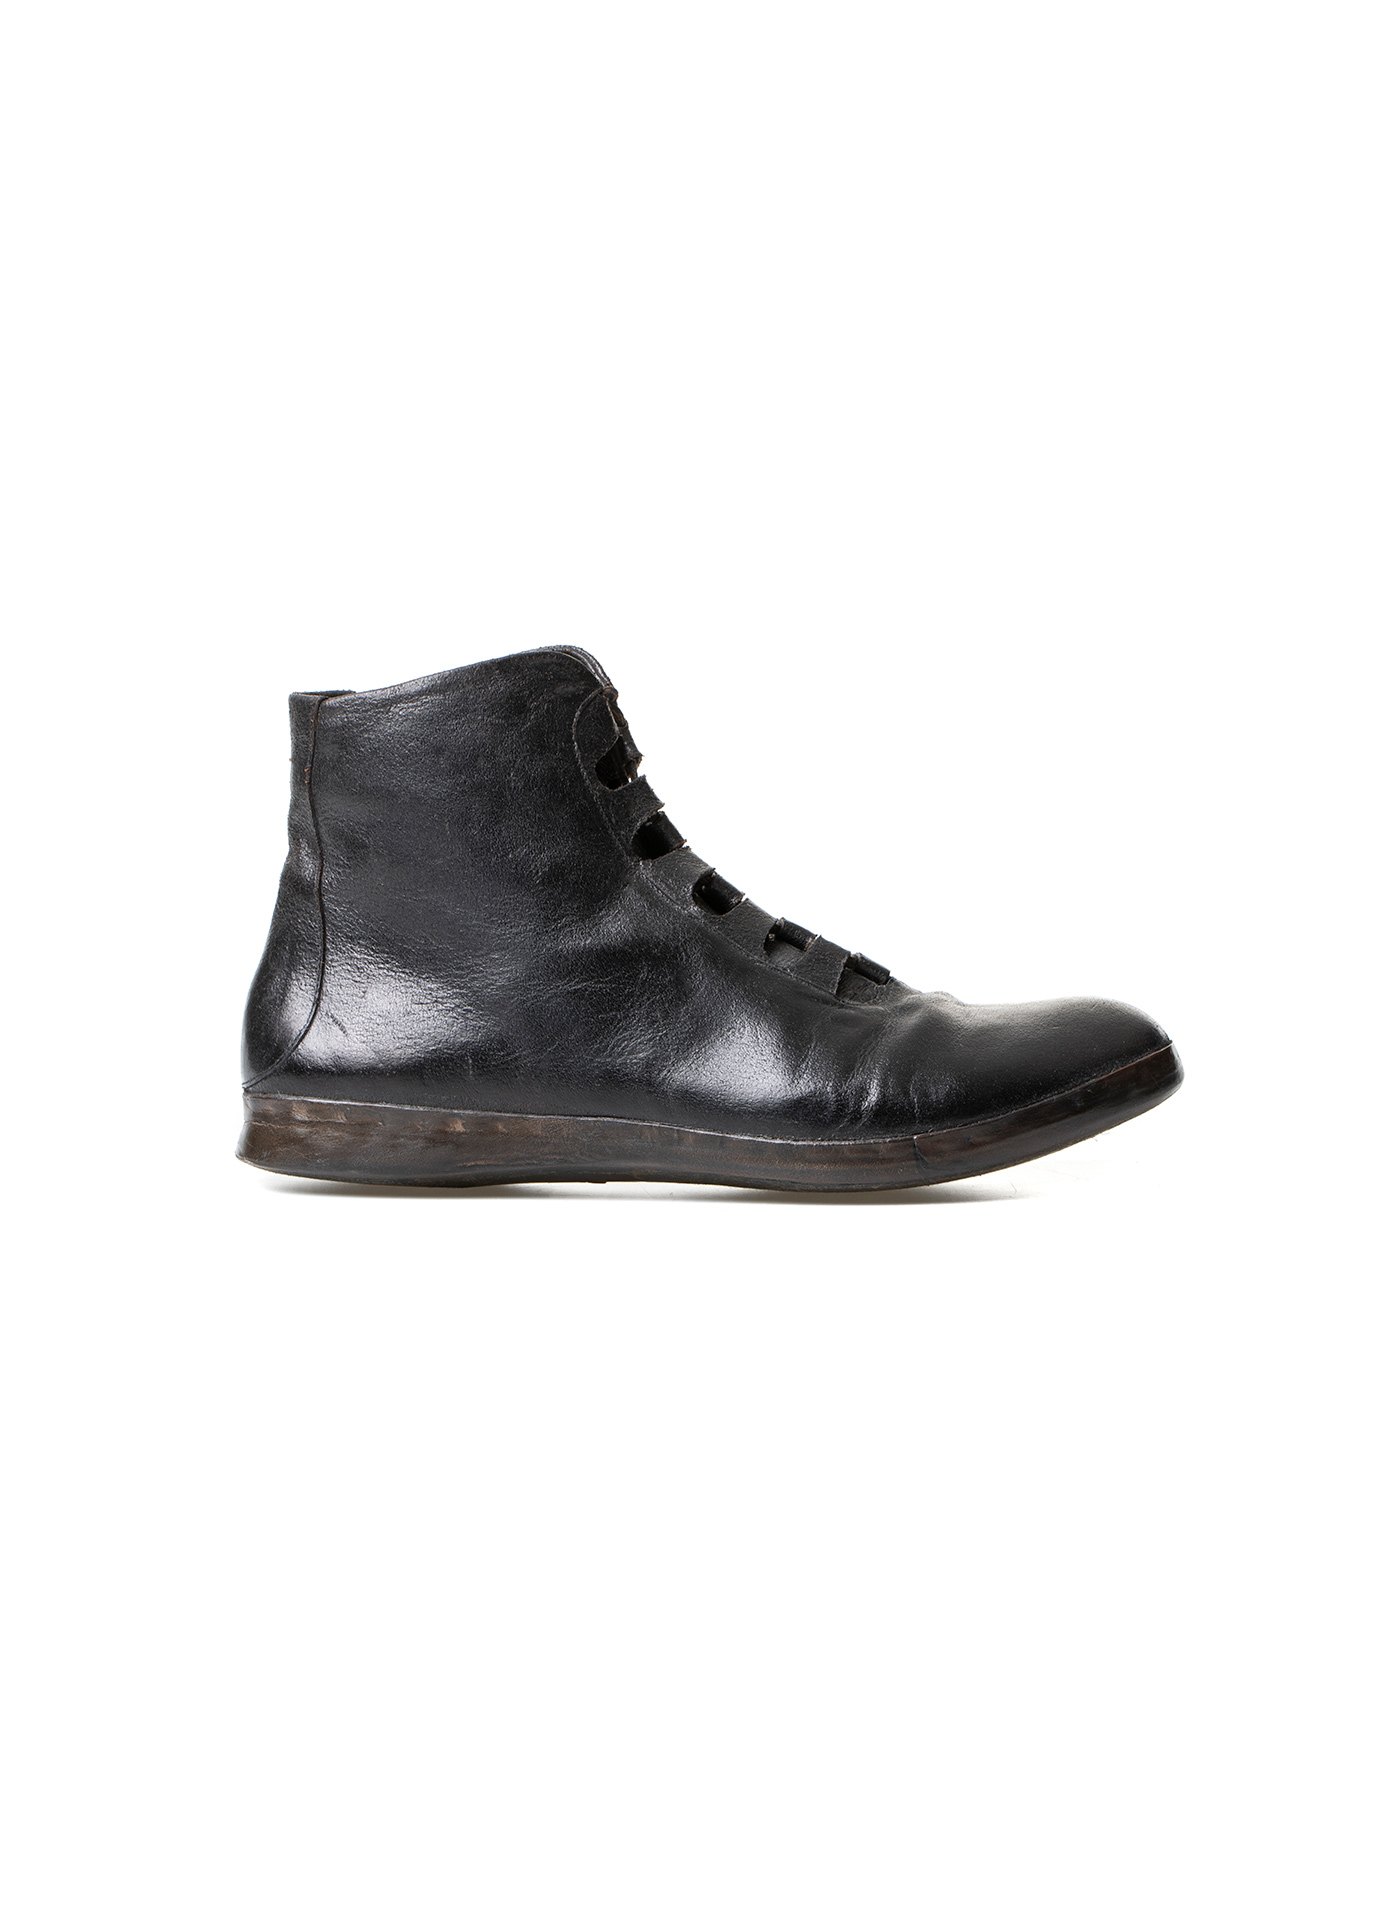 hide-m | m_moriabc Maurizio Altieri hand made Sneaker, horse leather